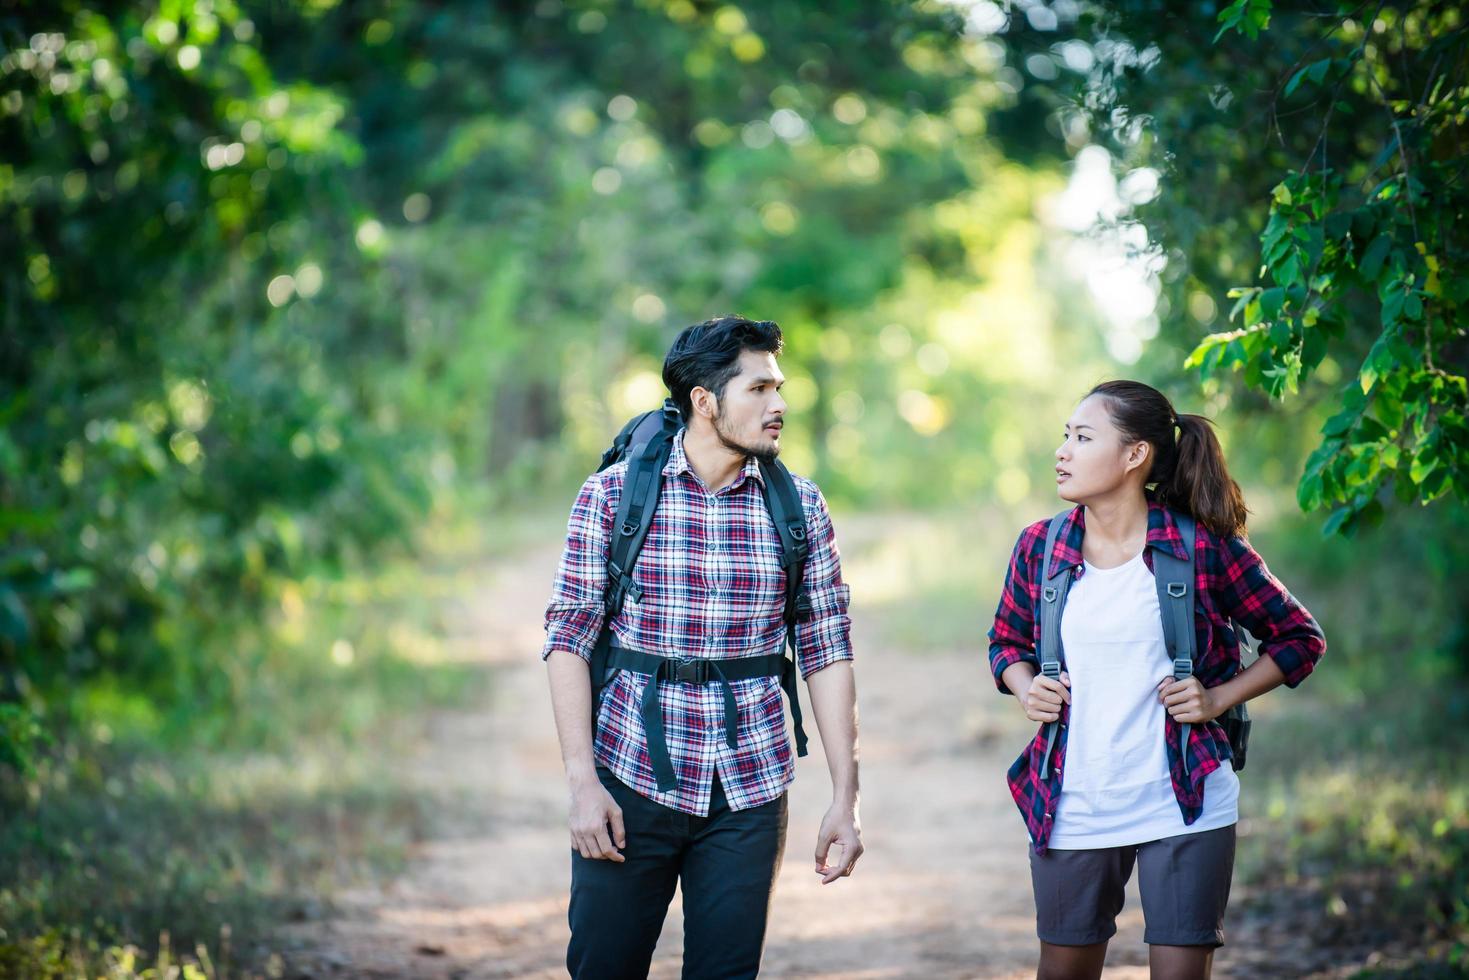 junges Paar mit Rucksäcken im Wald spazieren. Abenteuerwanderungen. foto